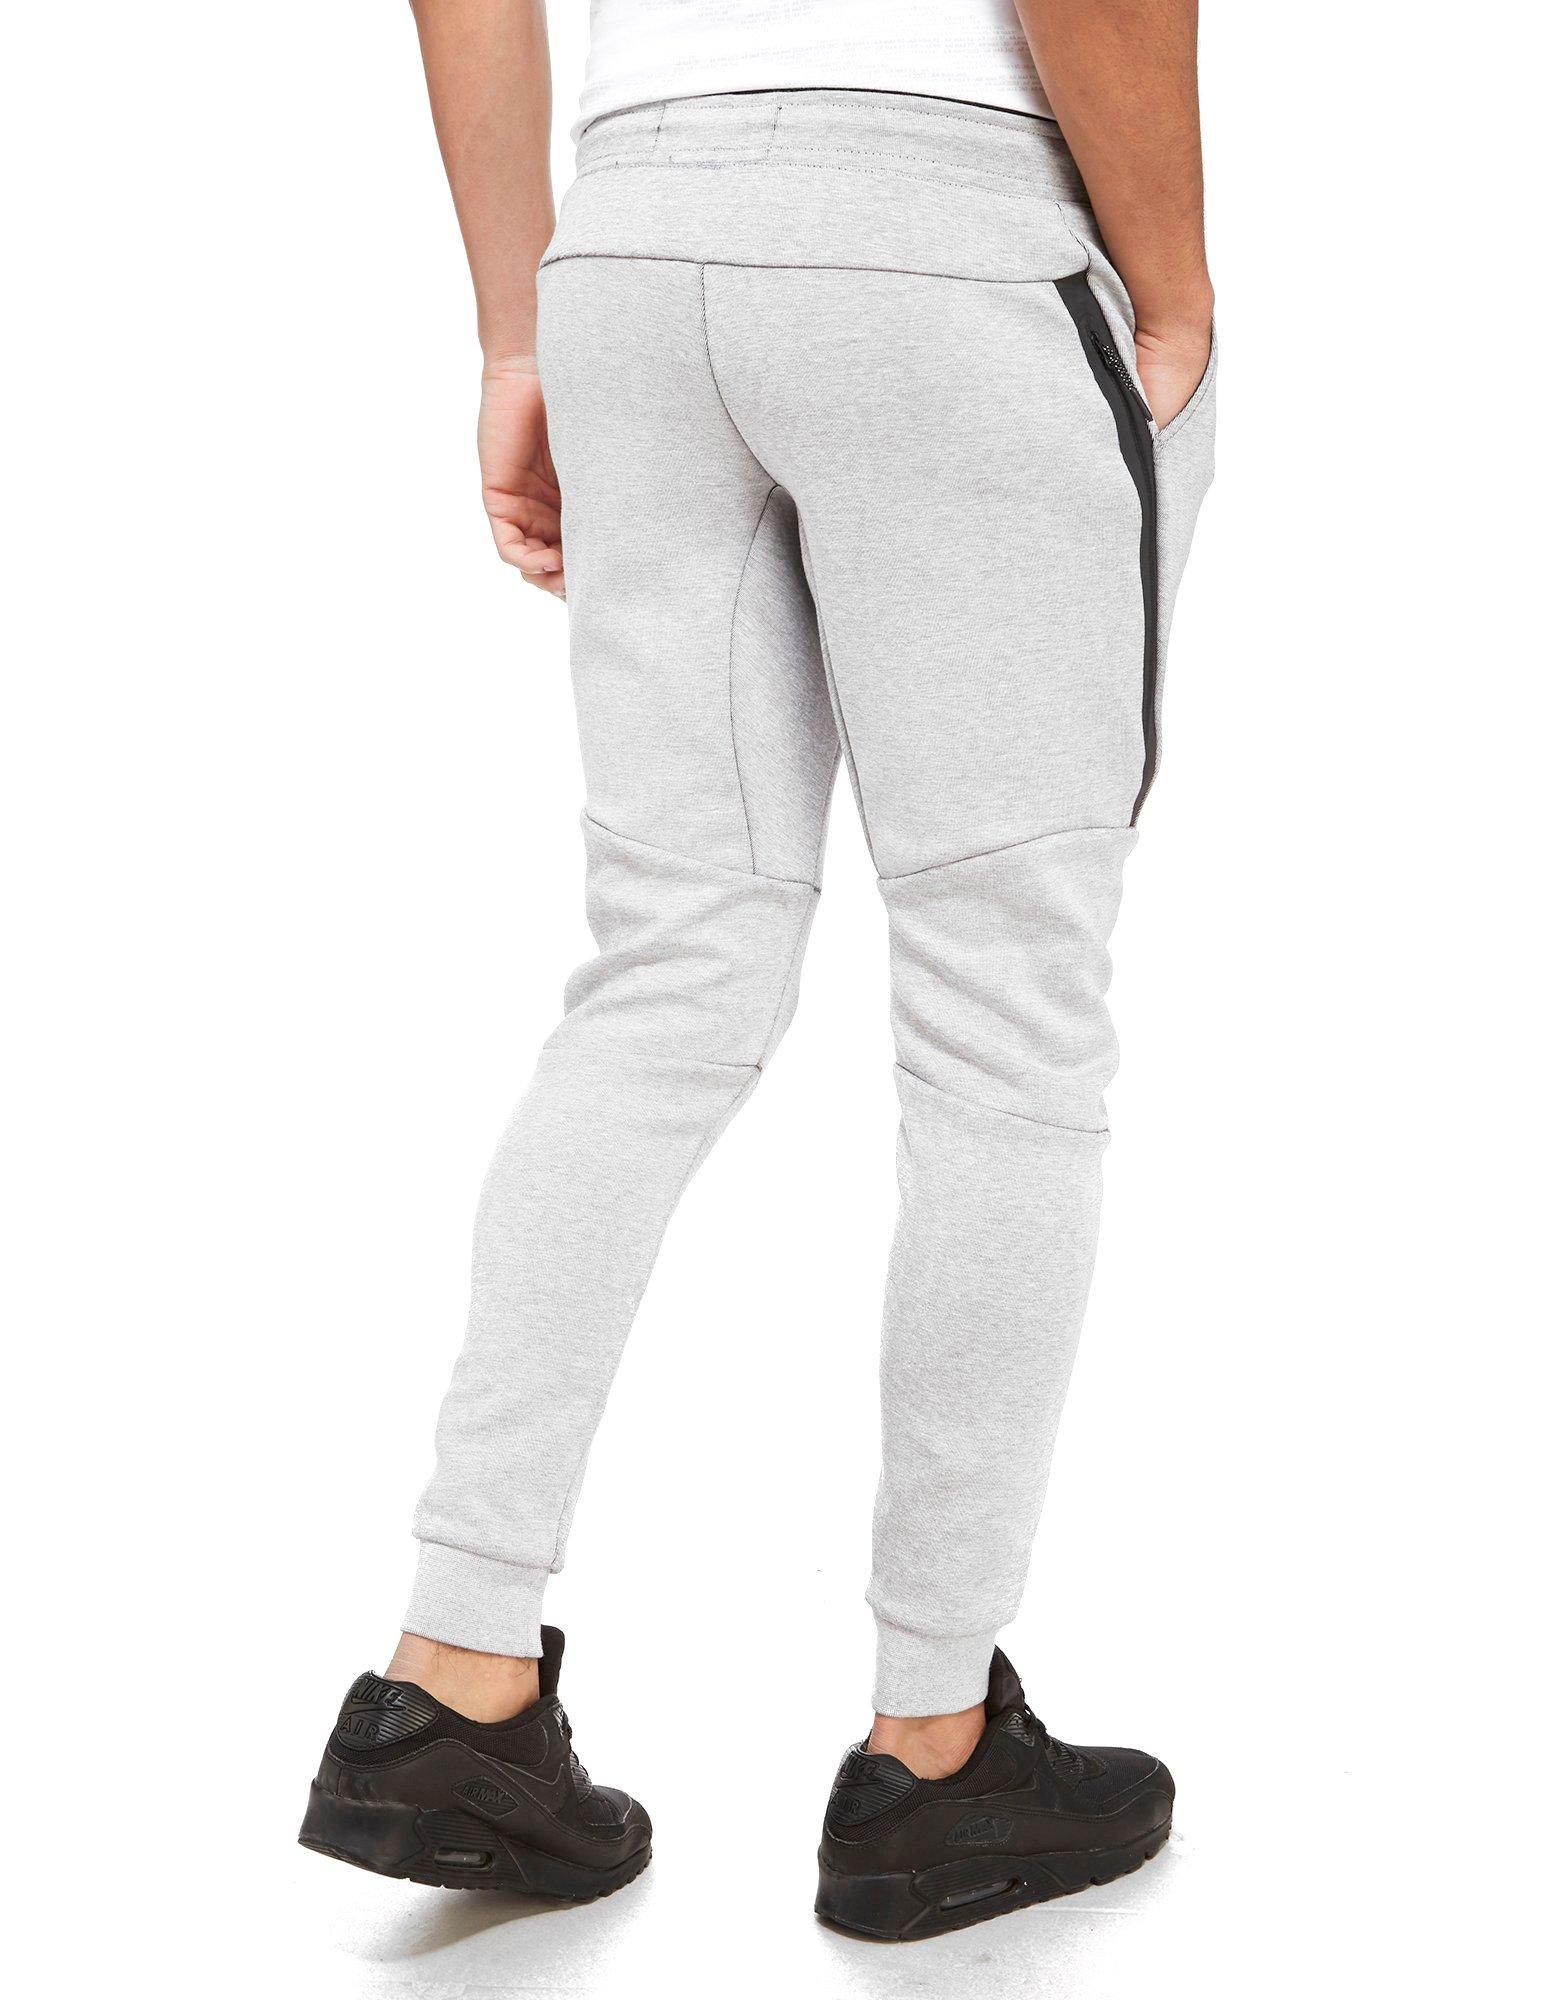 Nike Tech Fleece Pants in Grey (Gray) for Men - Lyst